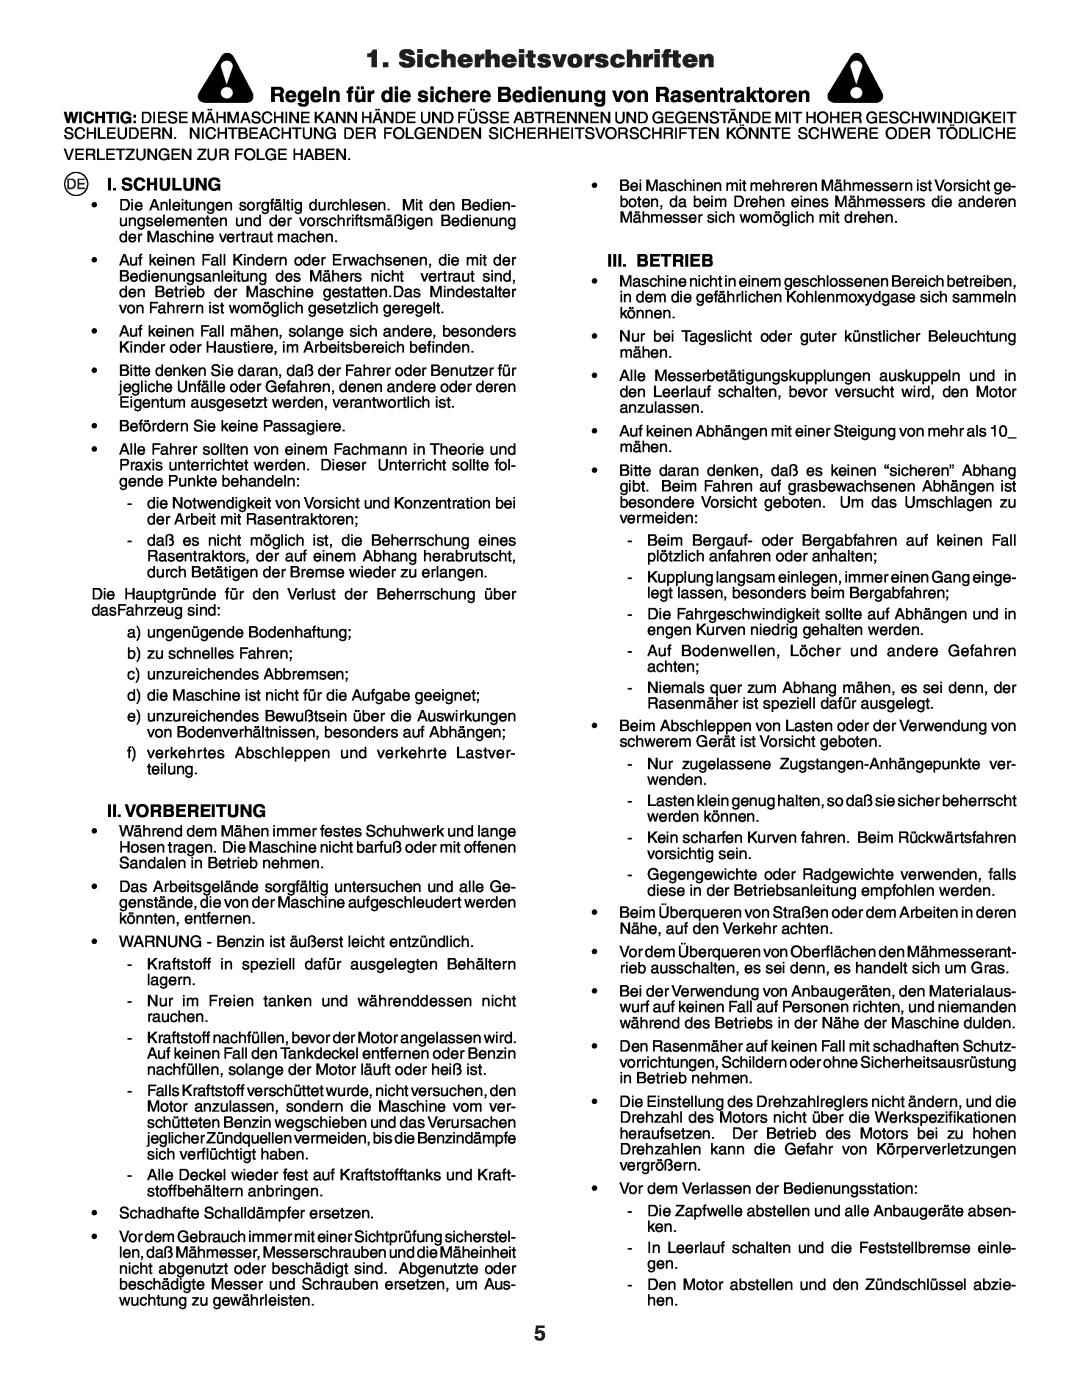 Husqvarna GTH250XP Sicherheitsvorschriften, Regeln für die sichere Bedienung von Rasentraktoren, I. Schulung, Iii. Betrieb 